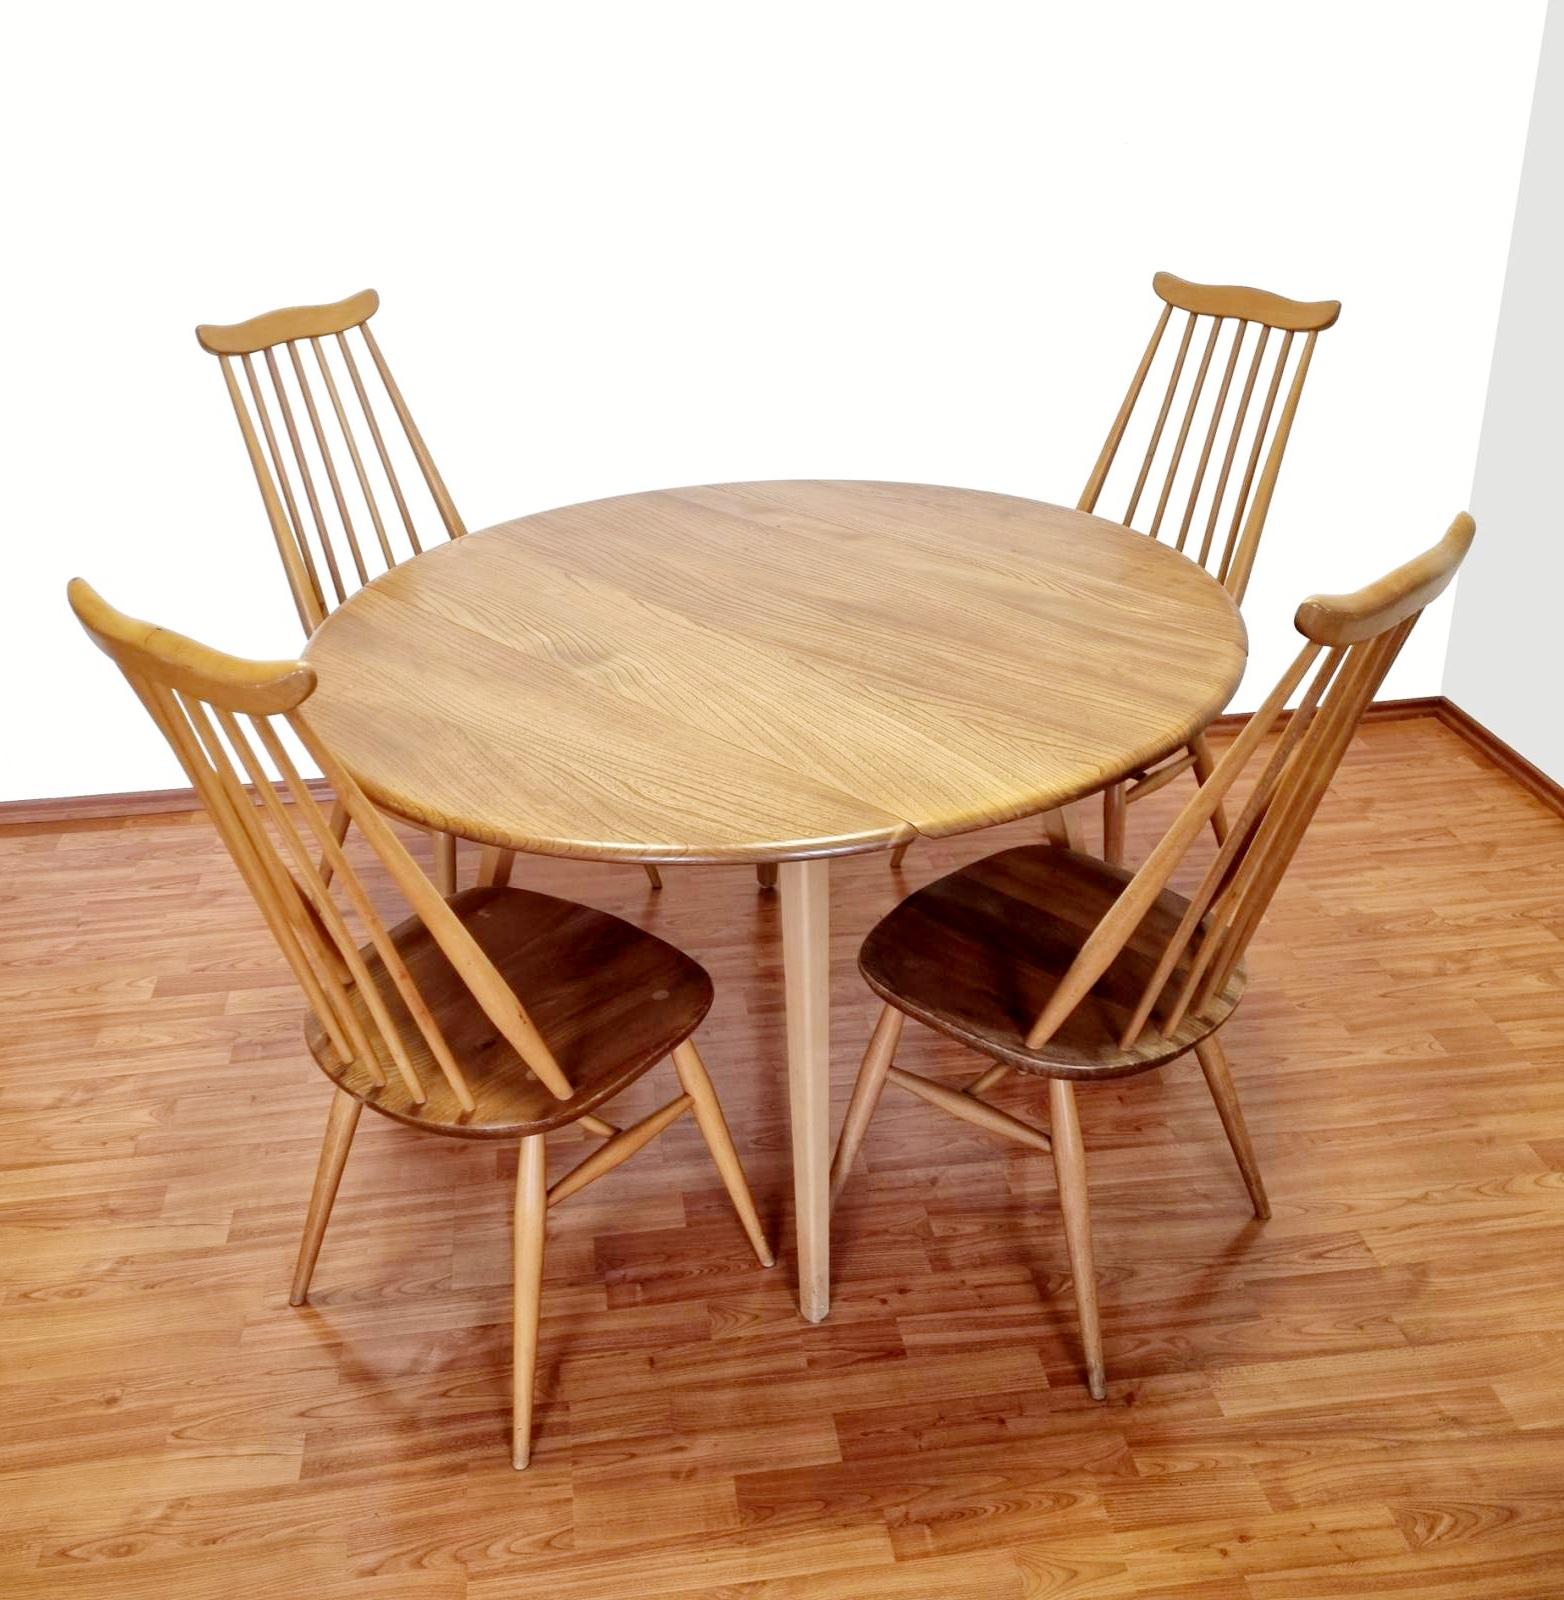 Bel ensemble de salle à manger Ercol du milieu du siècle avec table à feuilles tombantes et 4 chaises modèle 369 Goldsmith.
L'ensemble est en très bon état.

Longueur  63 cm (feuilles fermées)
Longueur 124 cm (complètement ouvert)